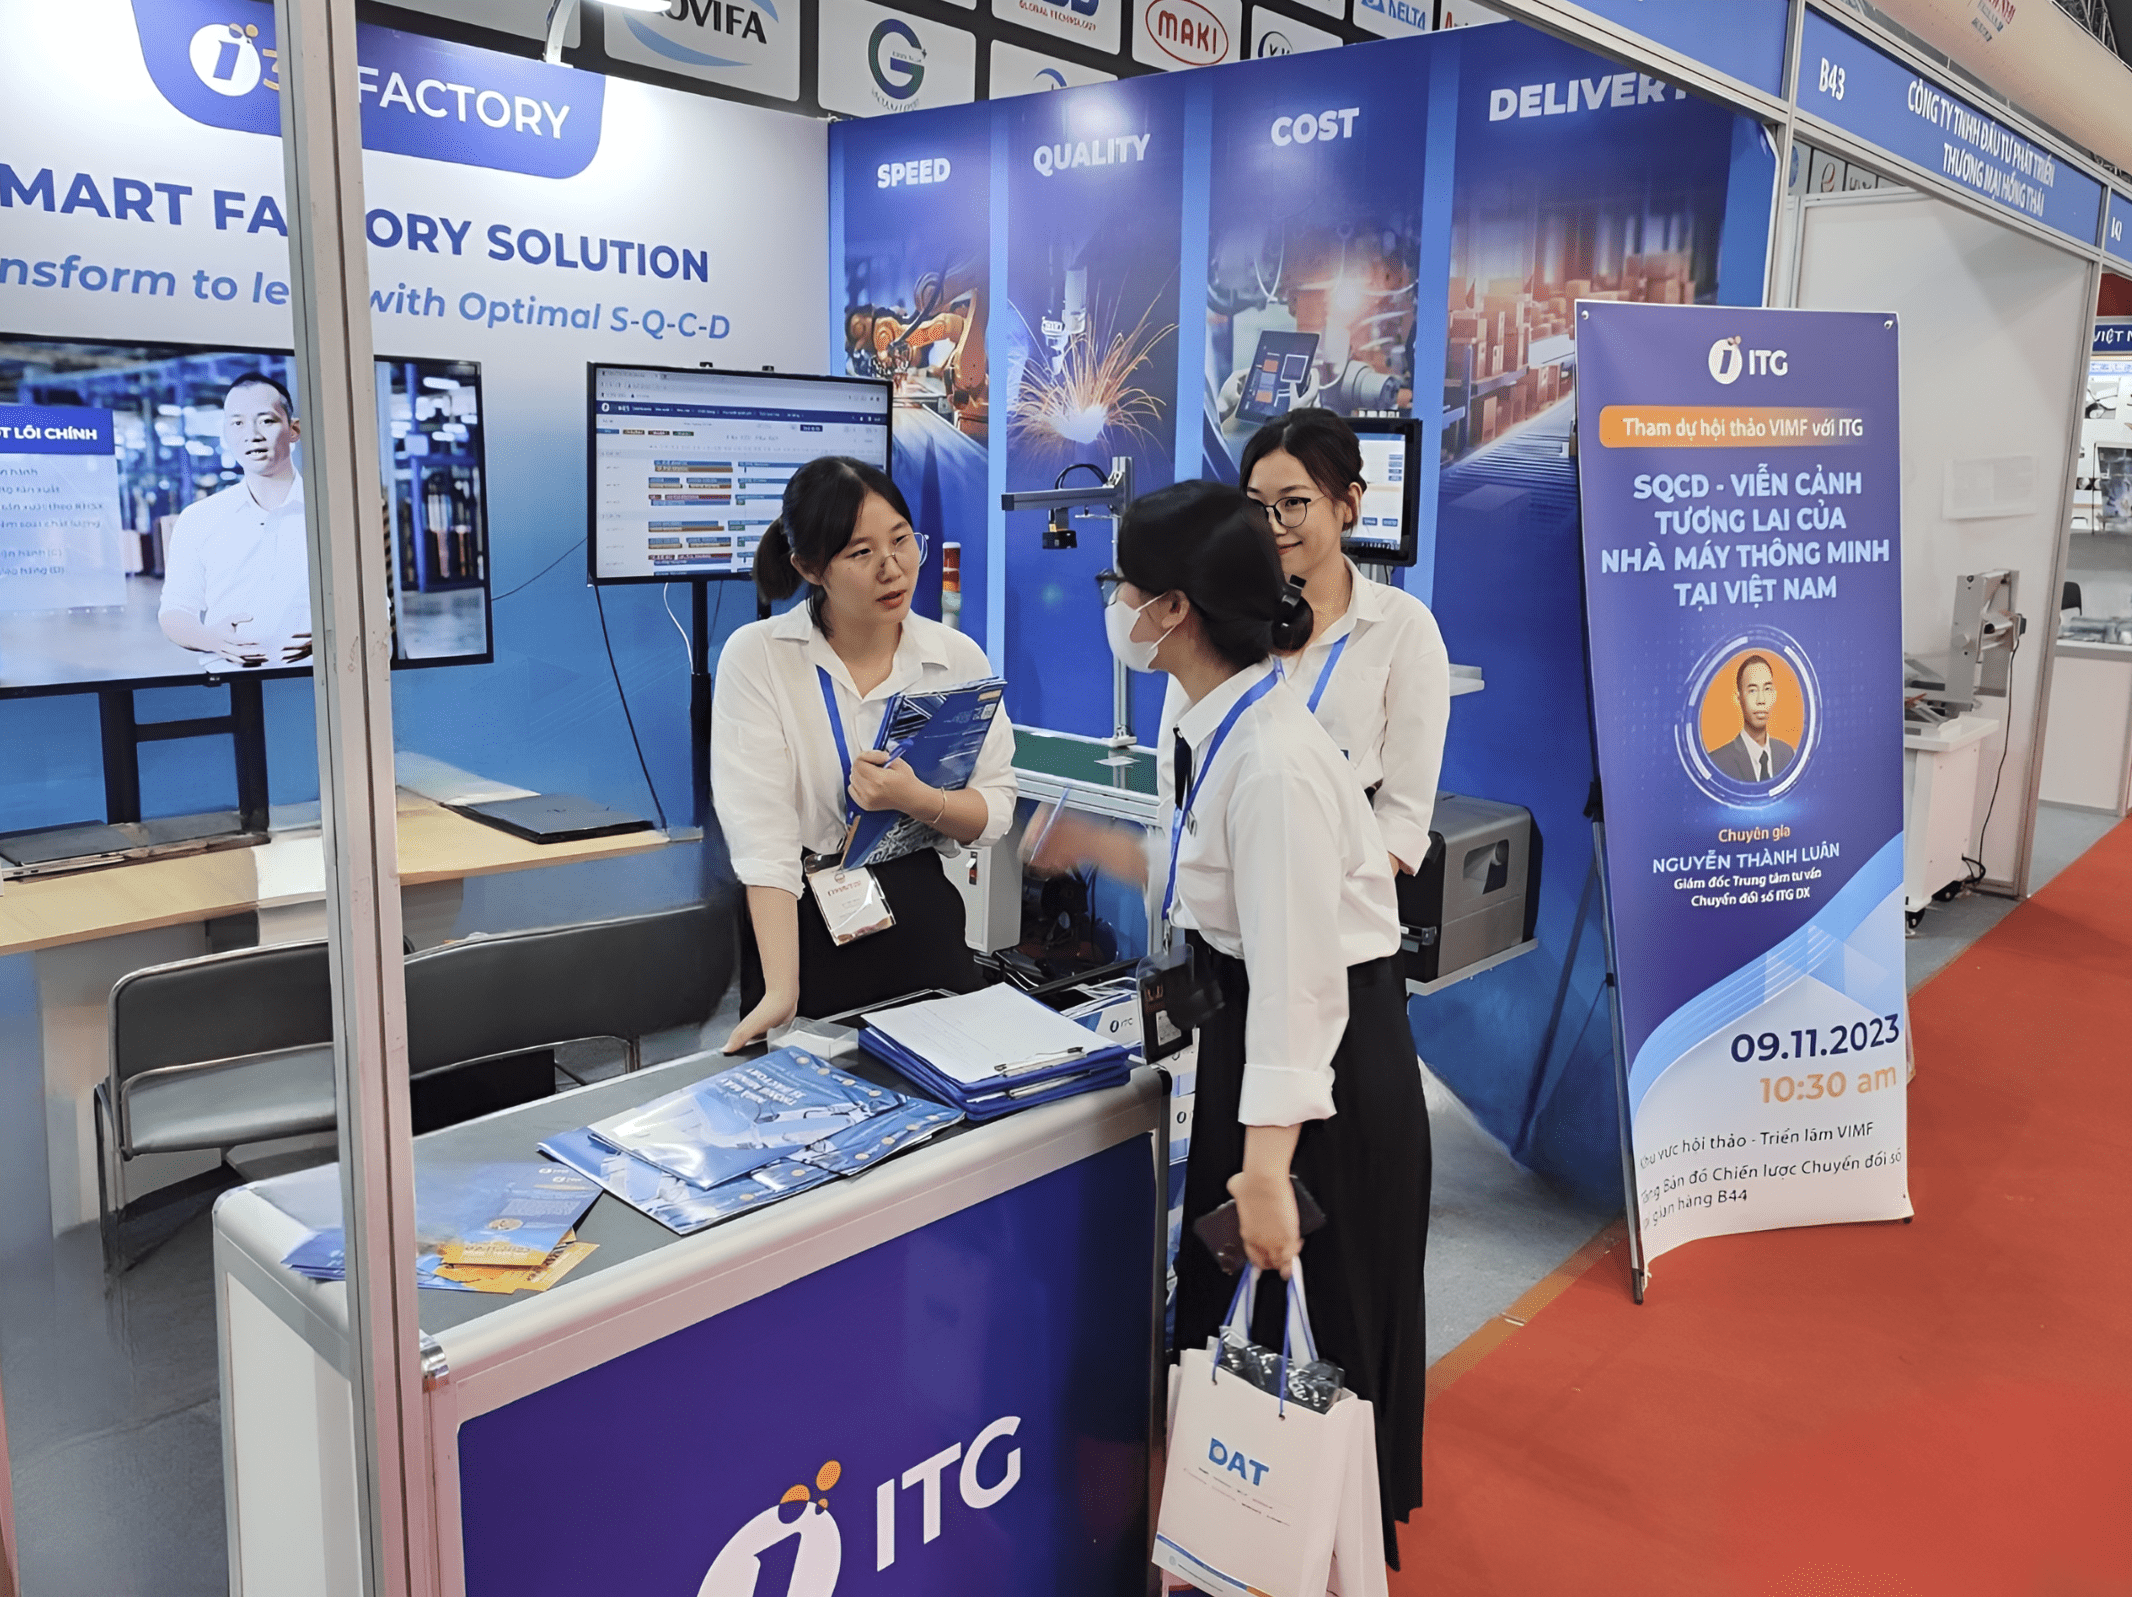 done 44 min - Giải pháp nhà máy thông minh 3S iFACTORY nhận được sự chú ý tại triển lãm quốc tế VIMF Bắc Ninh 2023